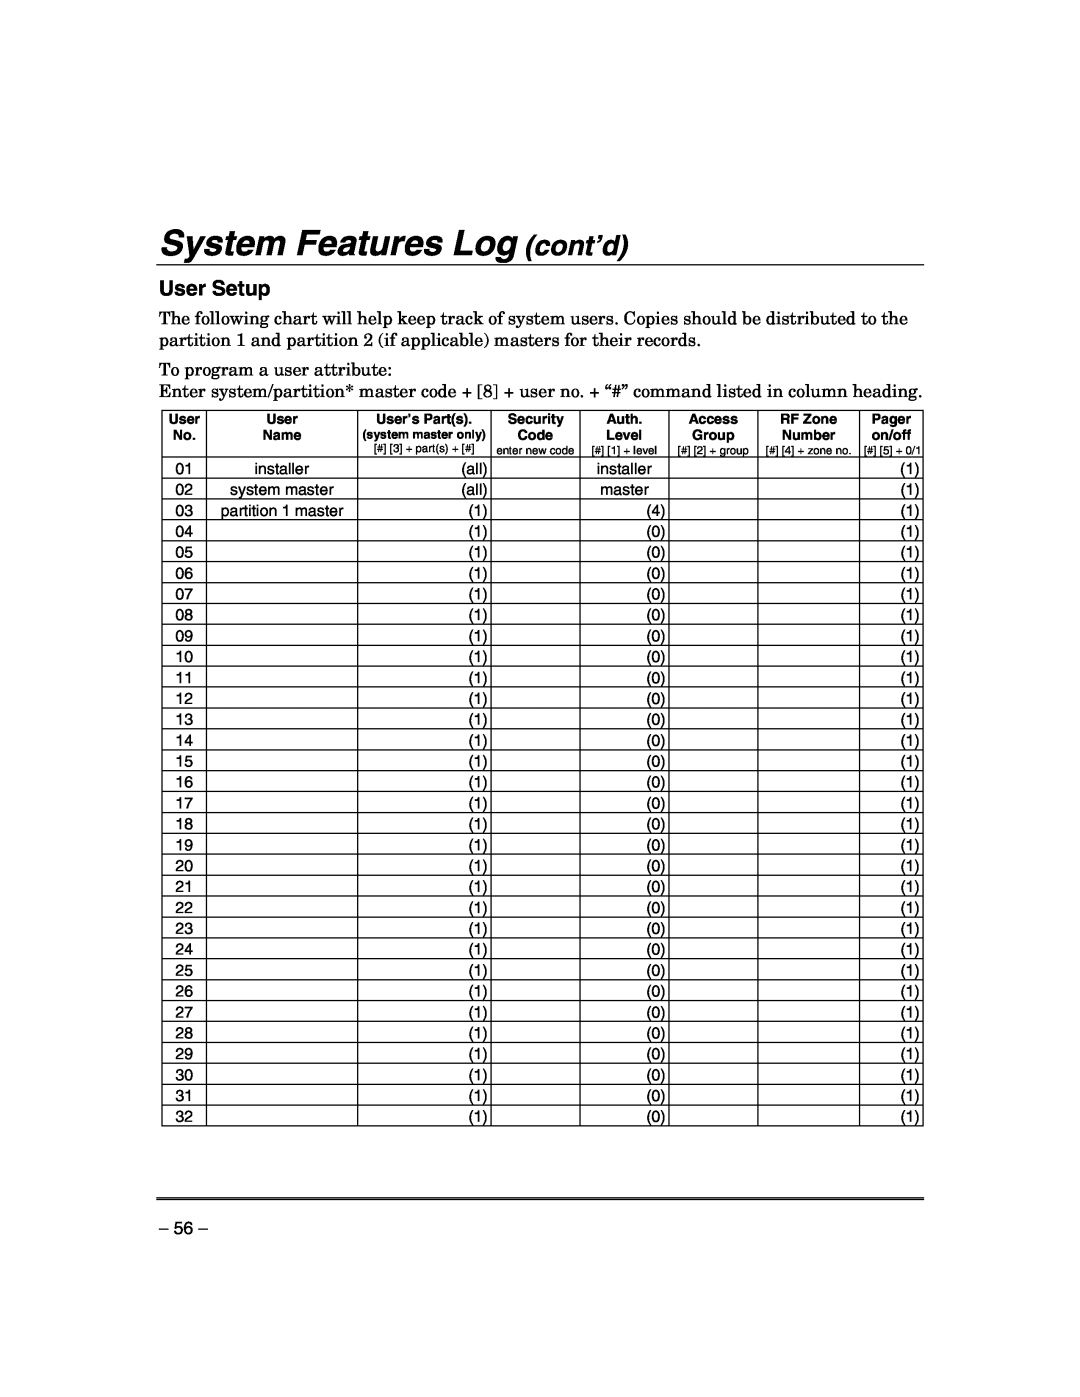 Honeywell VISTA-21IPSIA manual System Features Log cont’d, User Setup 